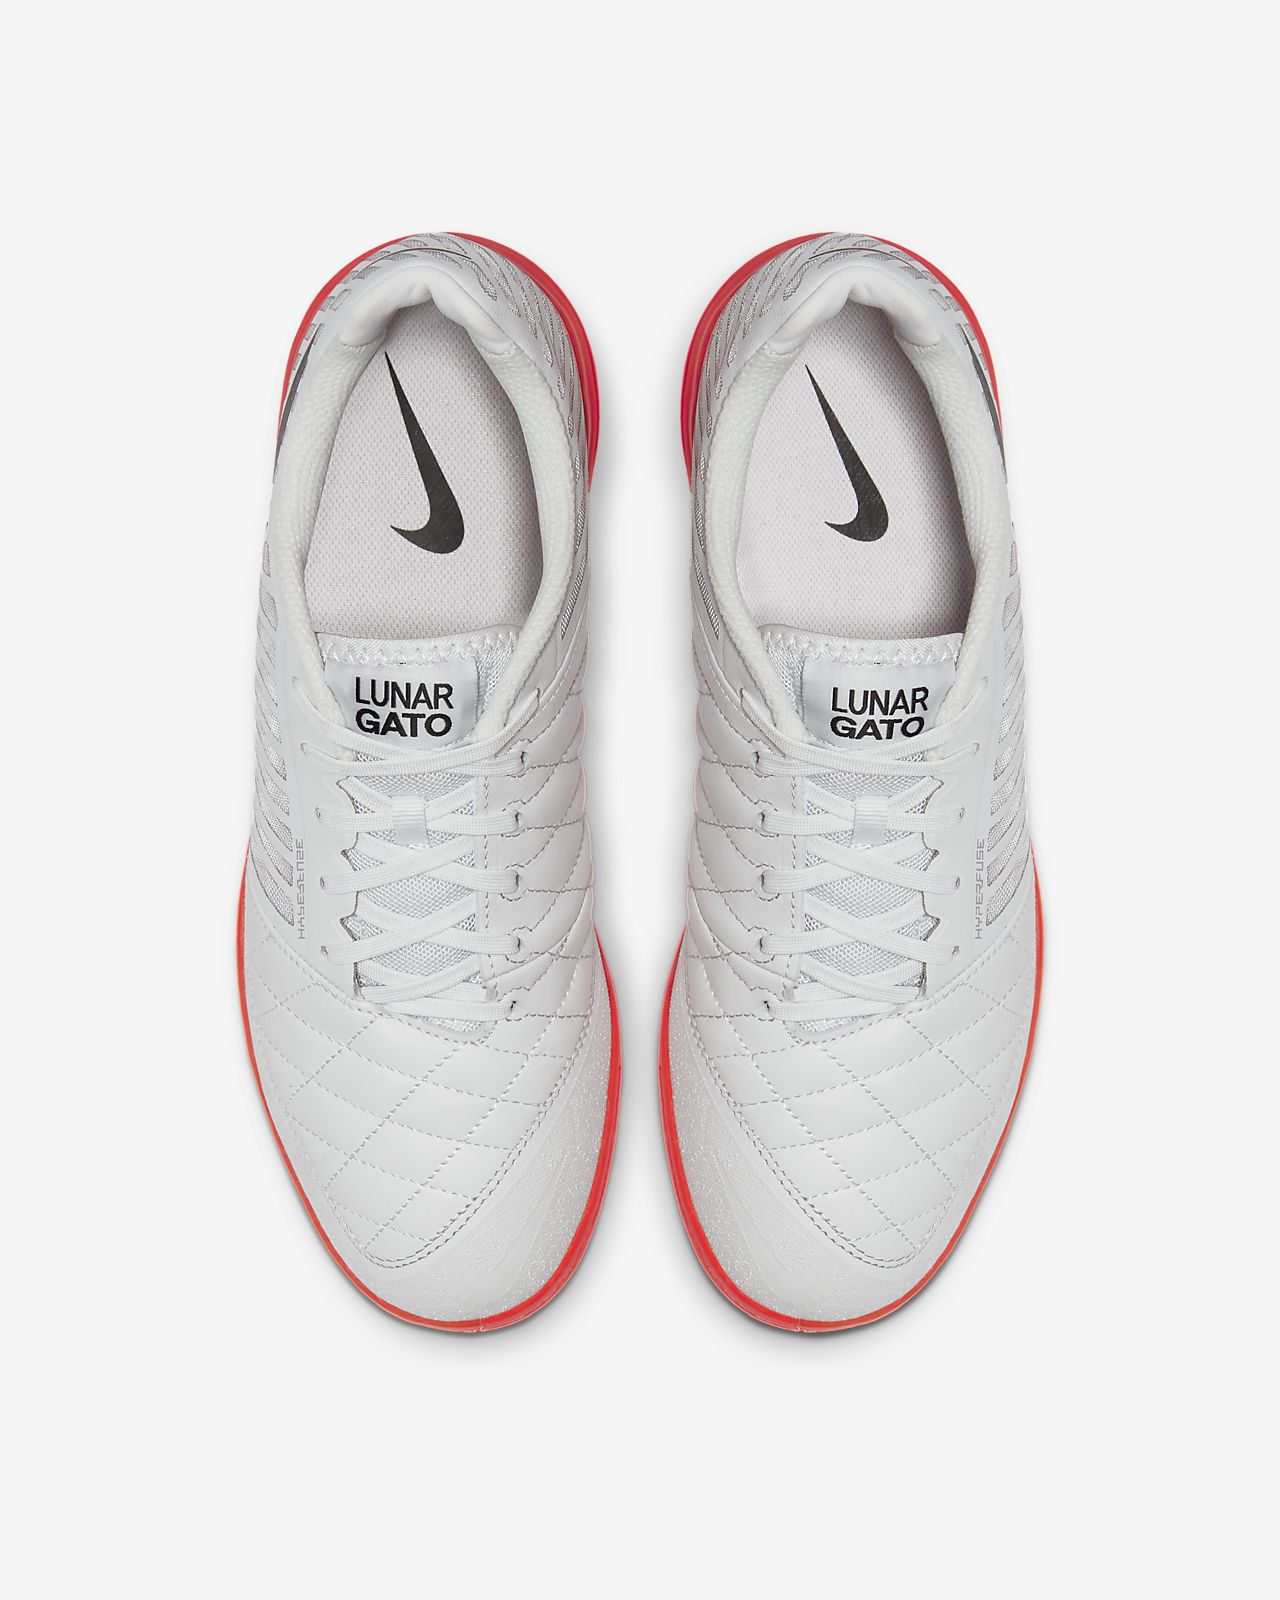 Comprar Zapatillas Nike Lunar Online, 55% |